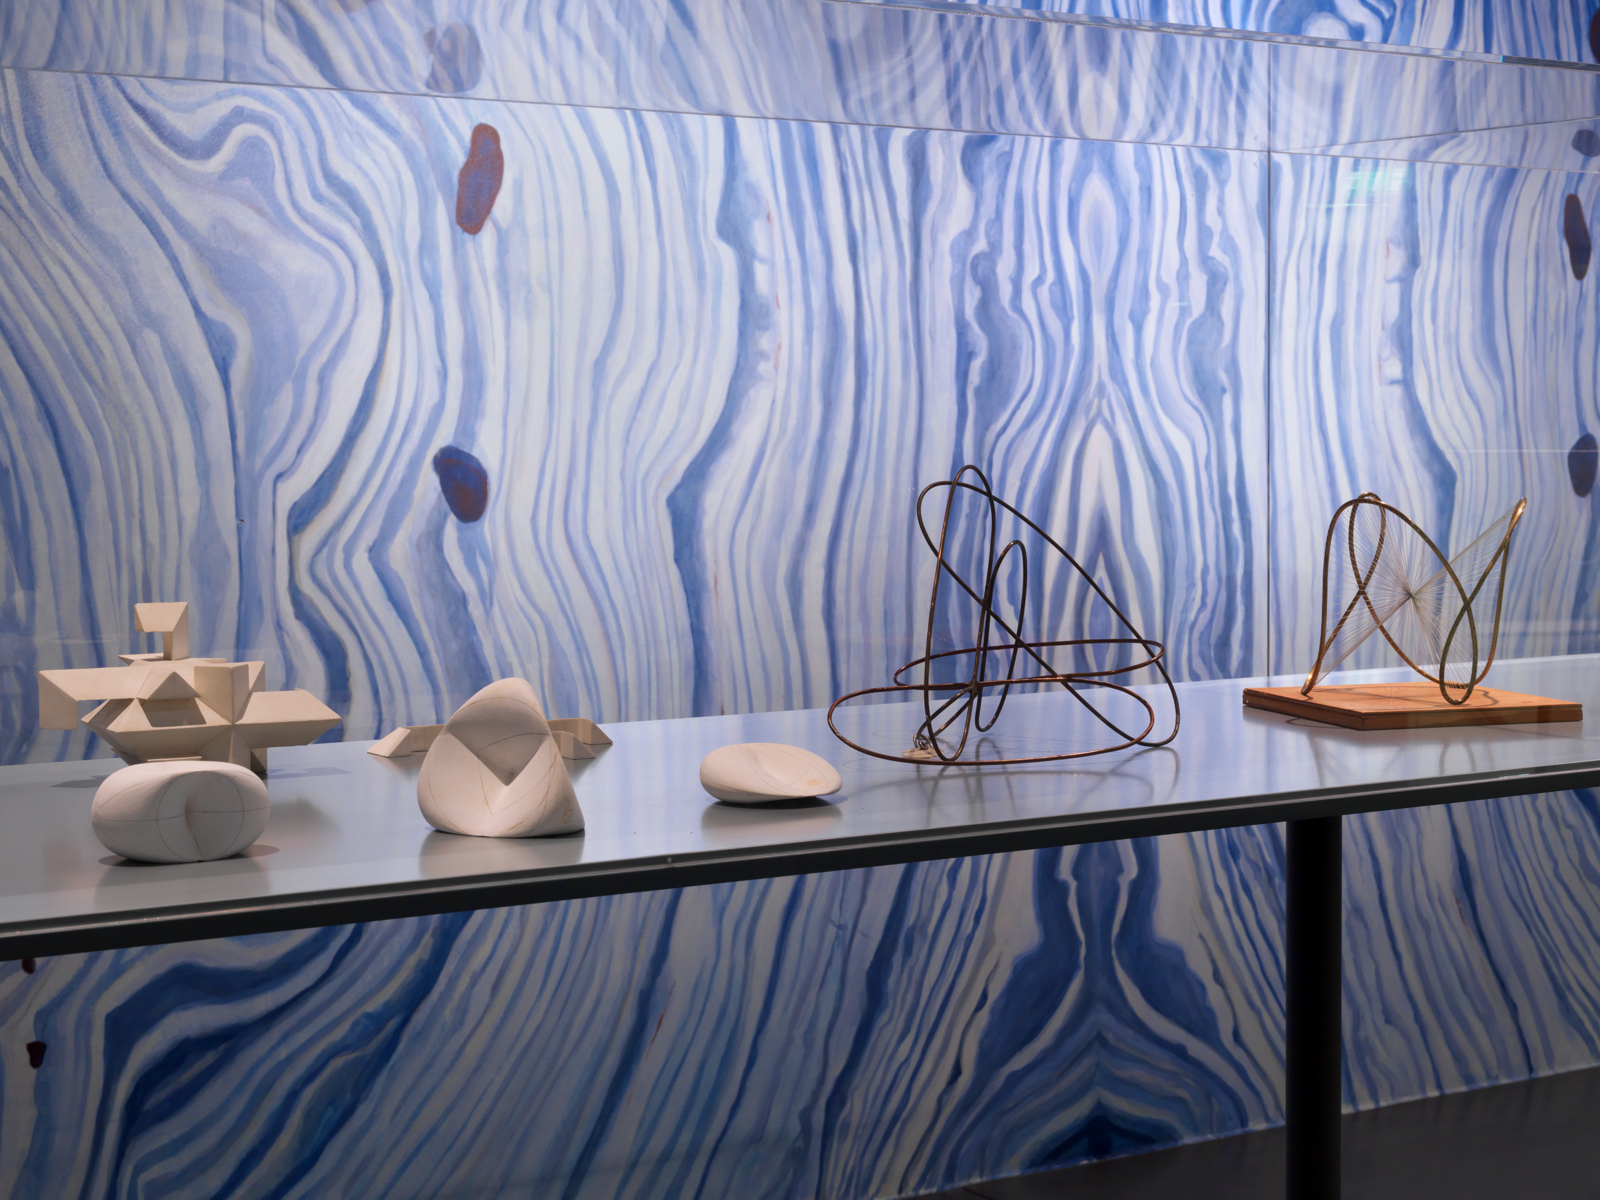 Mariana Castillo Deball / "Zurich Art Prize 2012", exhibition view, Haus Konstruktiv, Zürich / 2012